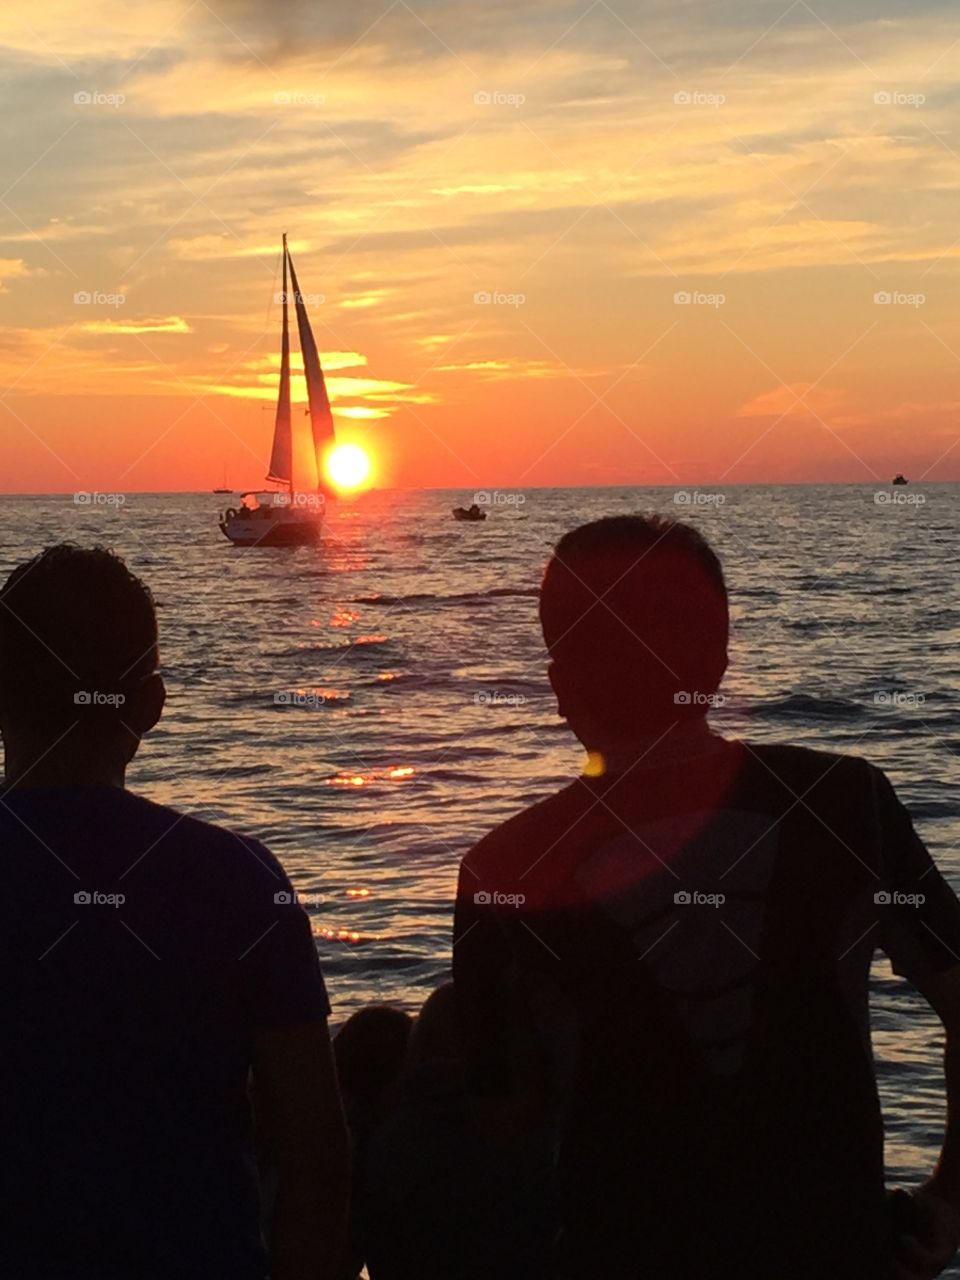 Lake Michigan sailing sunset 